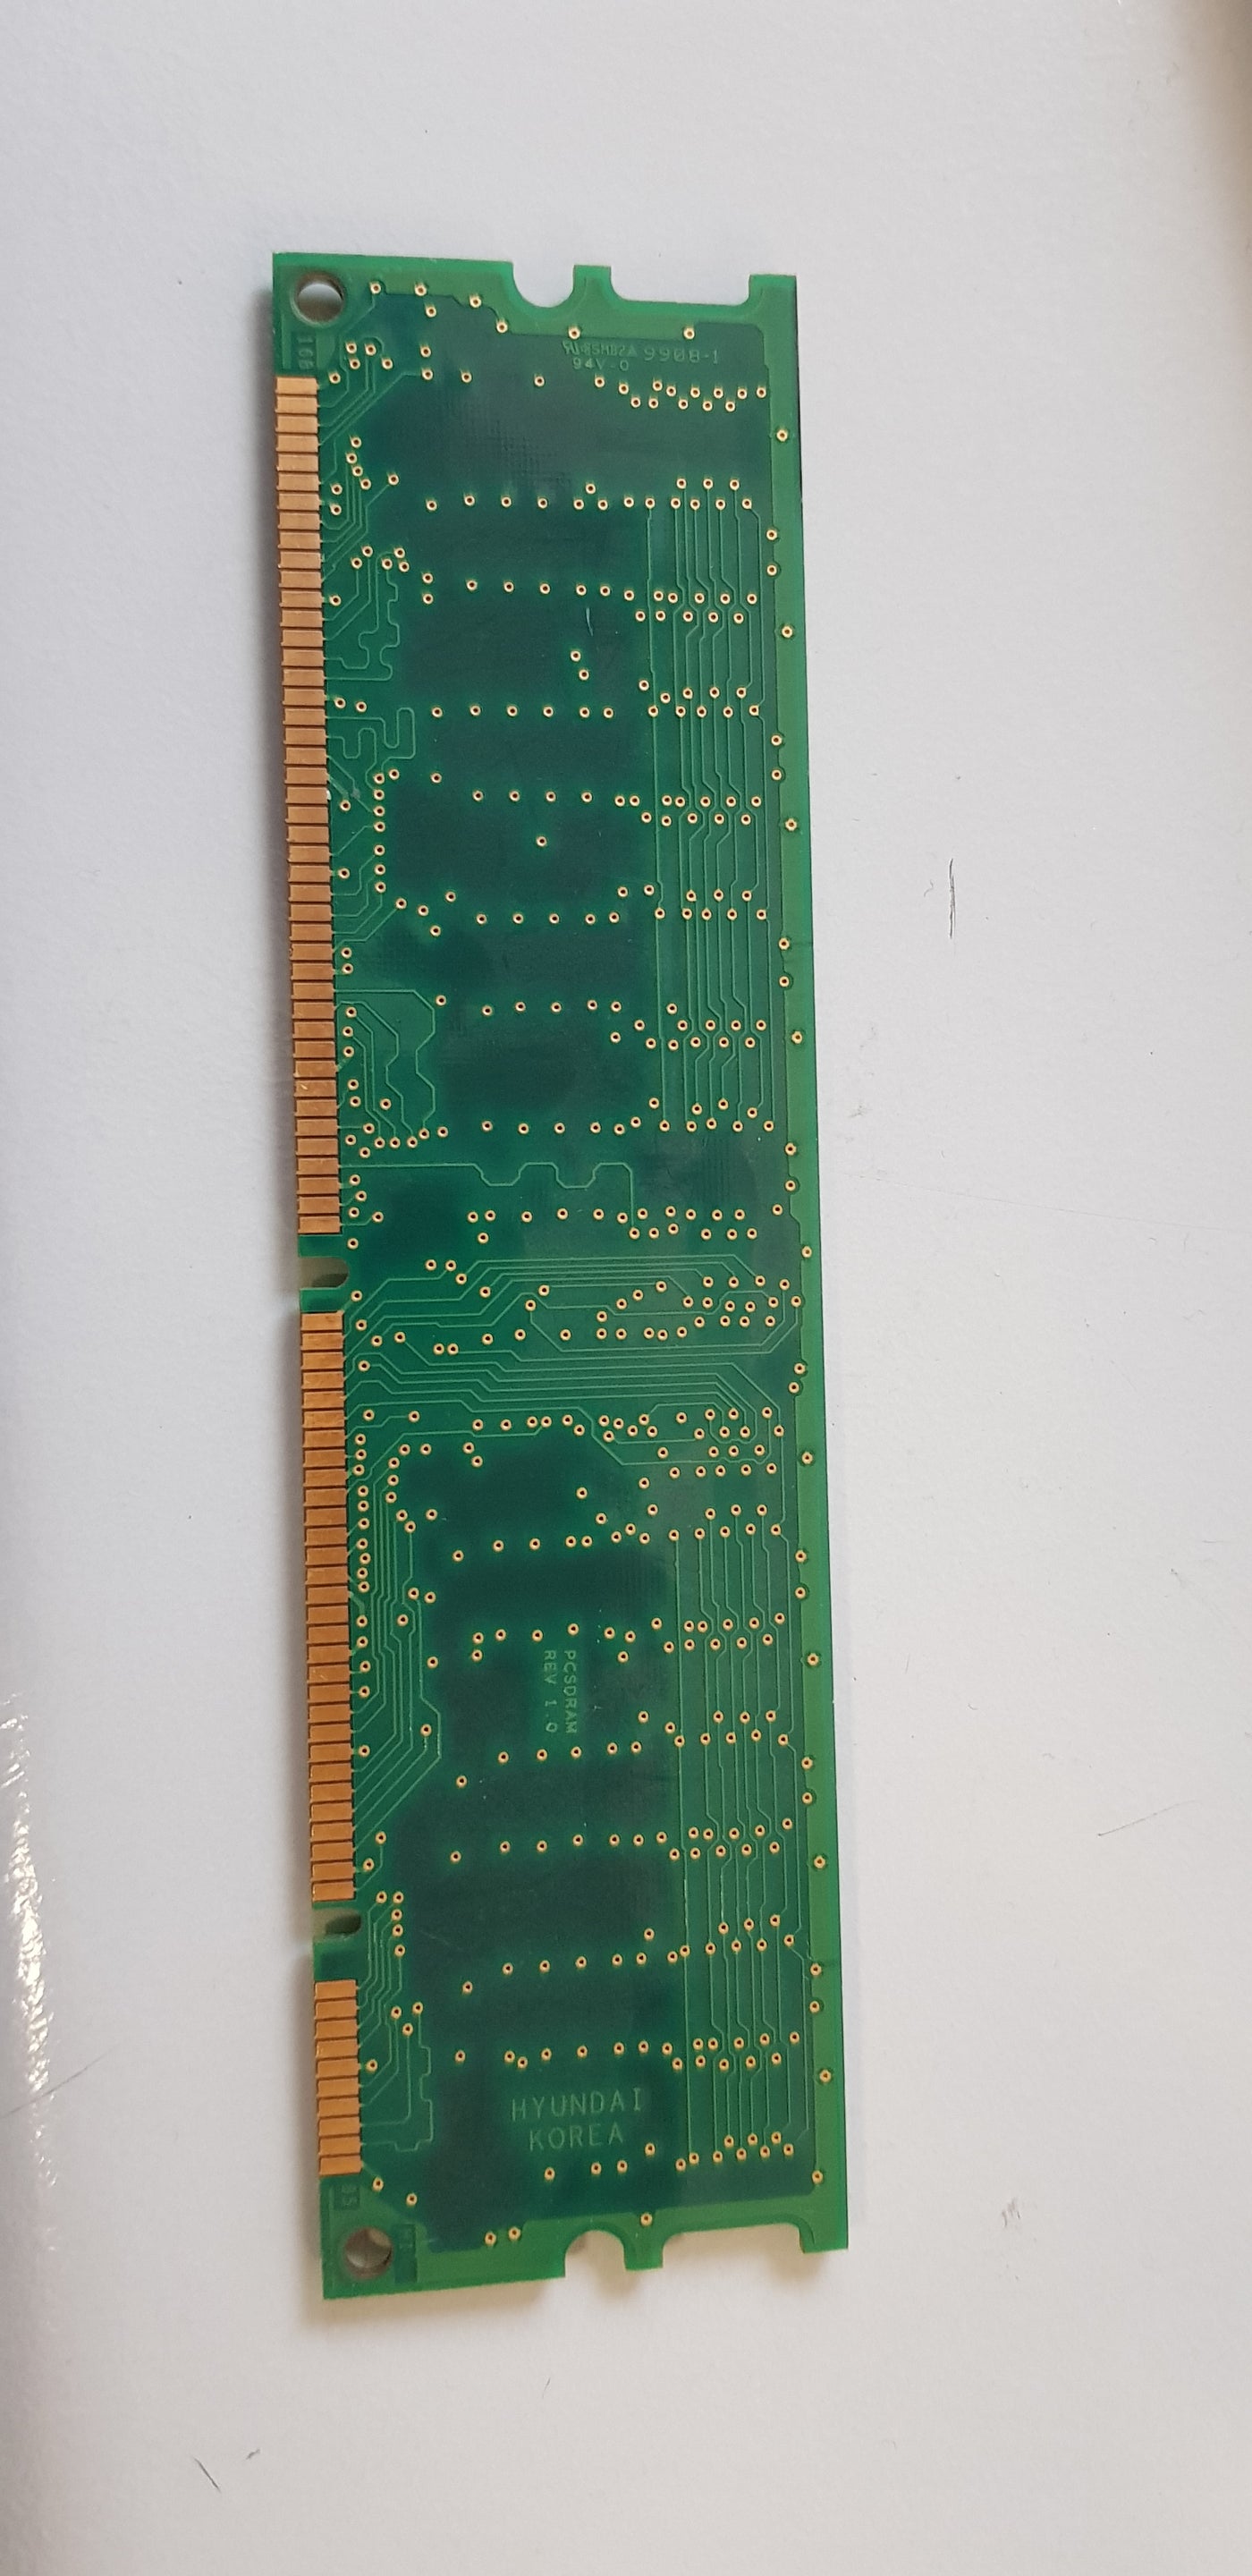 Hyundai AOW 64MB 168p PC100 CL3 9c 8x8 ECC SDRAM DIMM Memory Module (HYM7V75A801ATFG-10S)